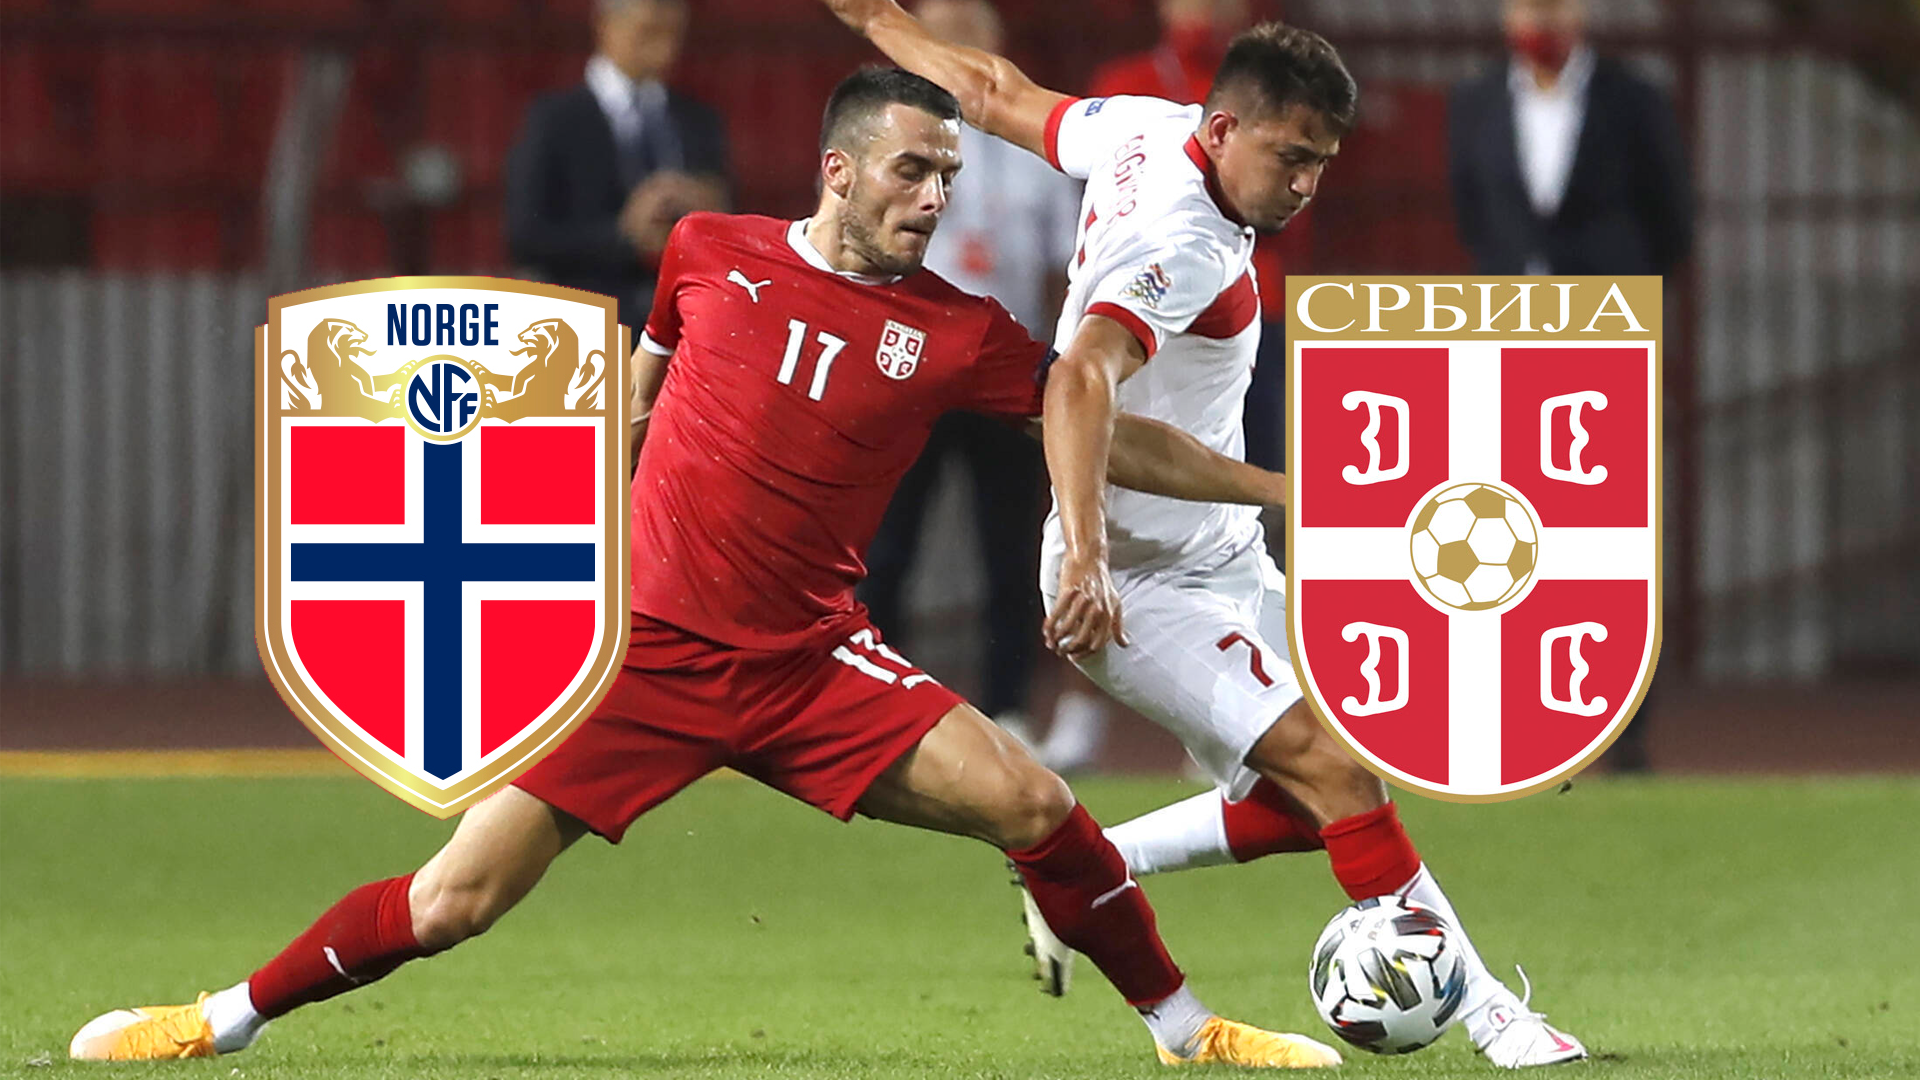 Norwegen gegen Serbien live im TV und im LIVE-STREAM Alle Informationen zur Übertragung der EM-Qualifikation (Playoff) Goal Deutschland